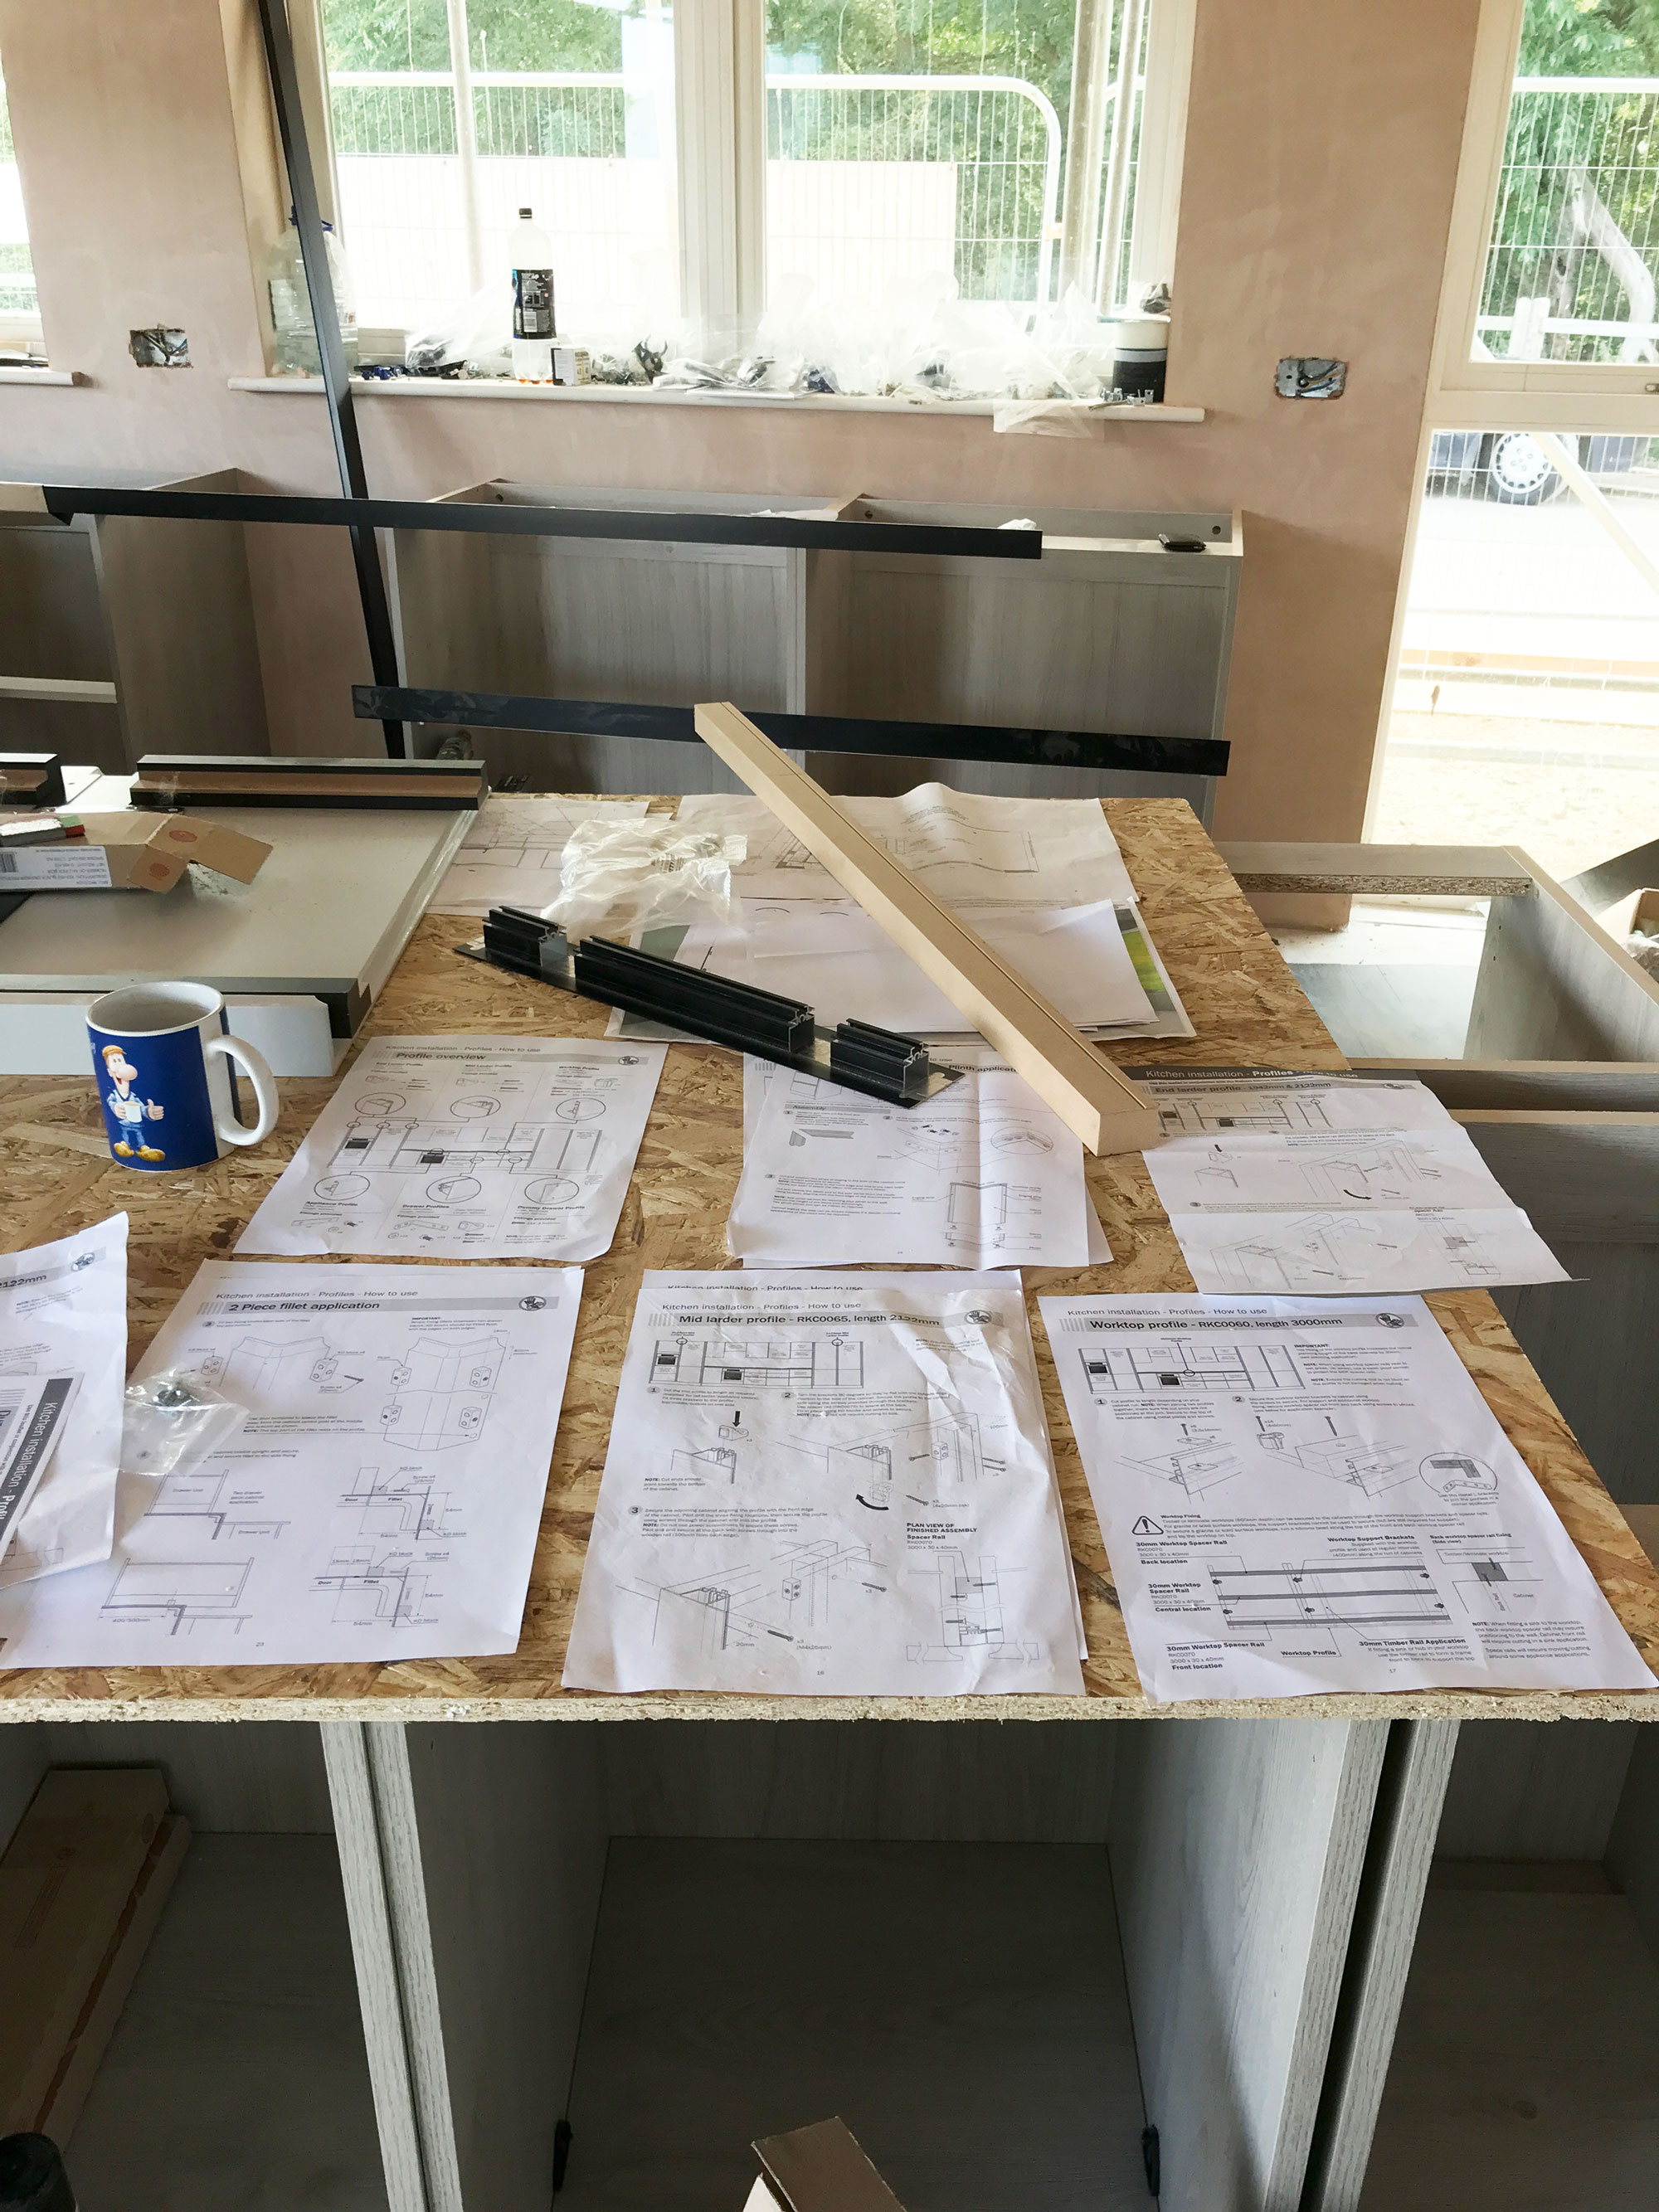 Planning a kitchen